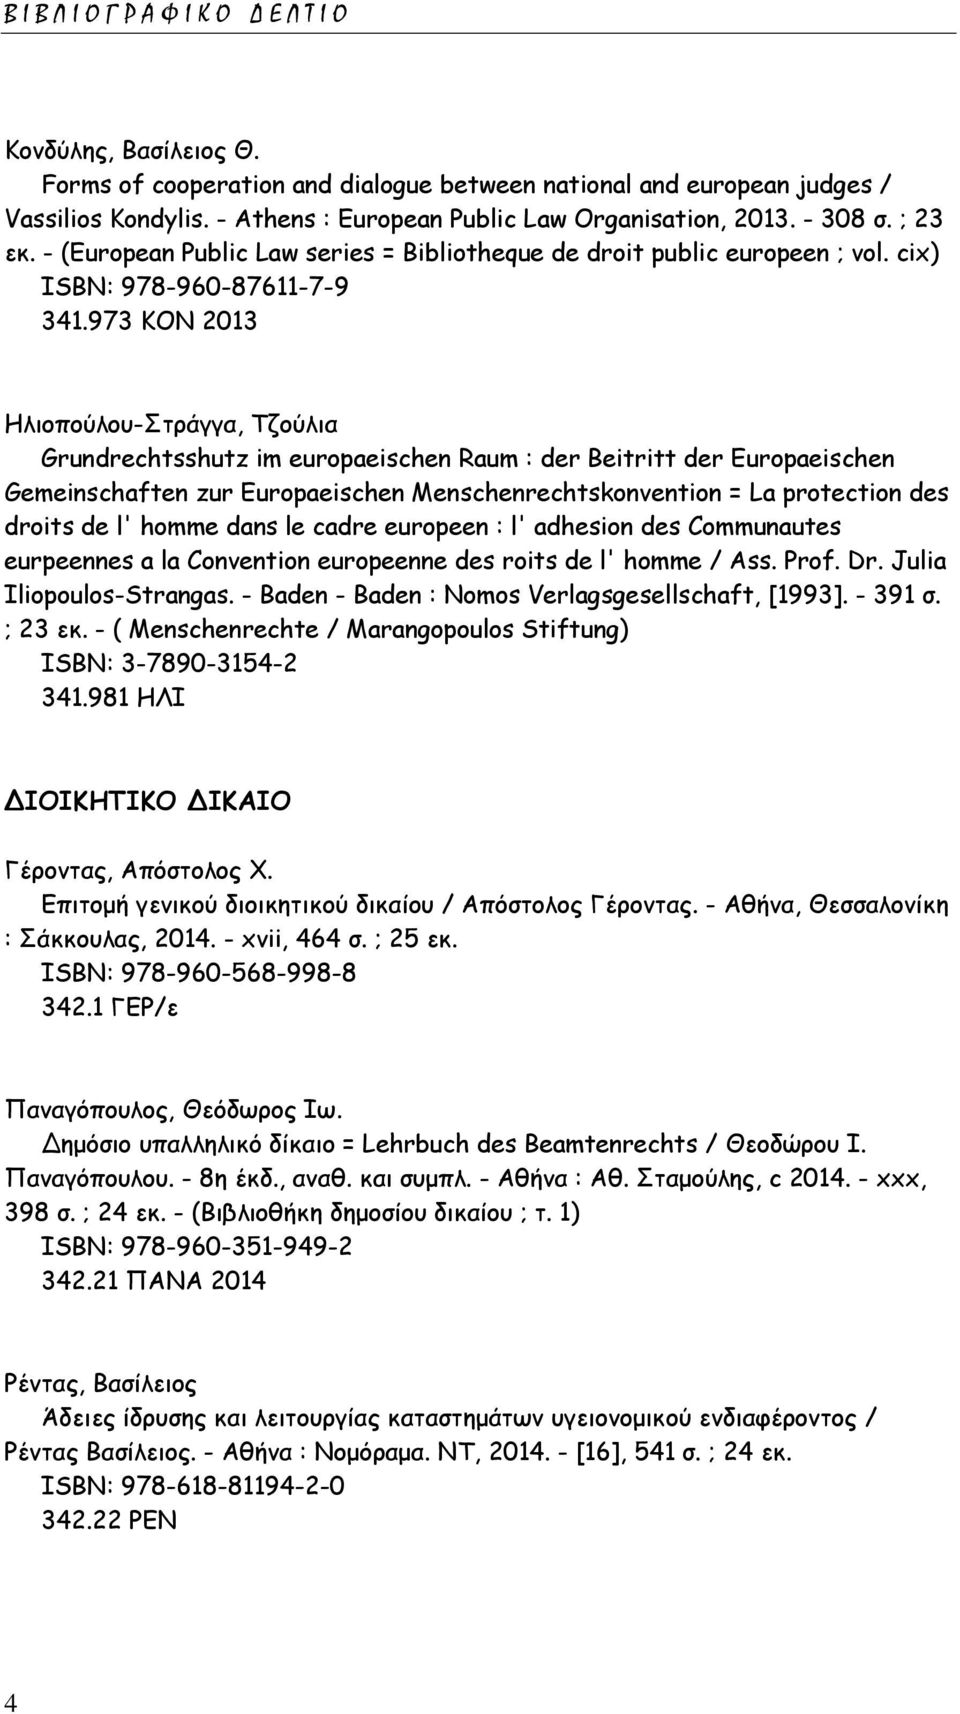 973 ΚΟΝ 2013 Ηλιοπούλου-Στράγγα, Τζούλια Grundrechtsshutz im europaeischen Raum : der Beitritt der Europaeischen Gemeinschaften zur Europaeischen Menschenrechtskonvention = La protection des droits